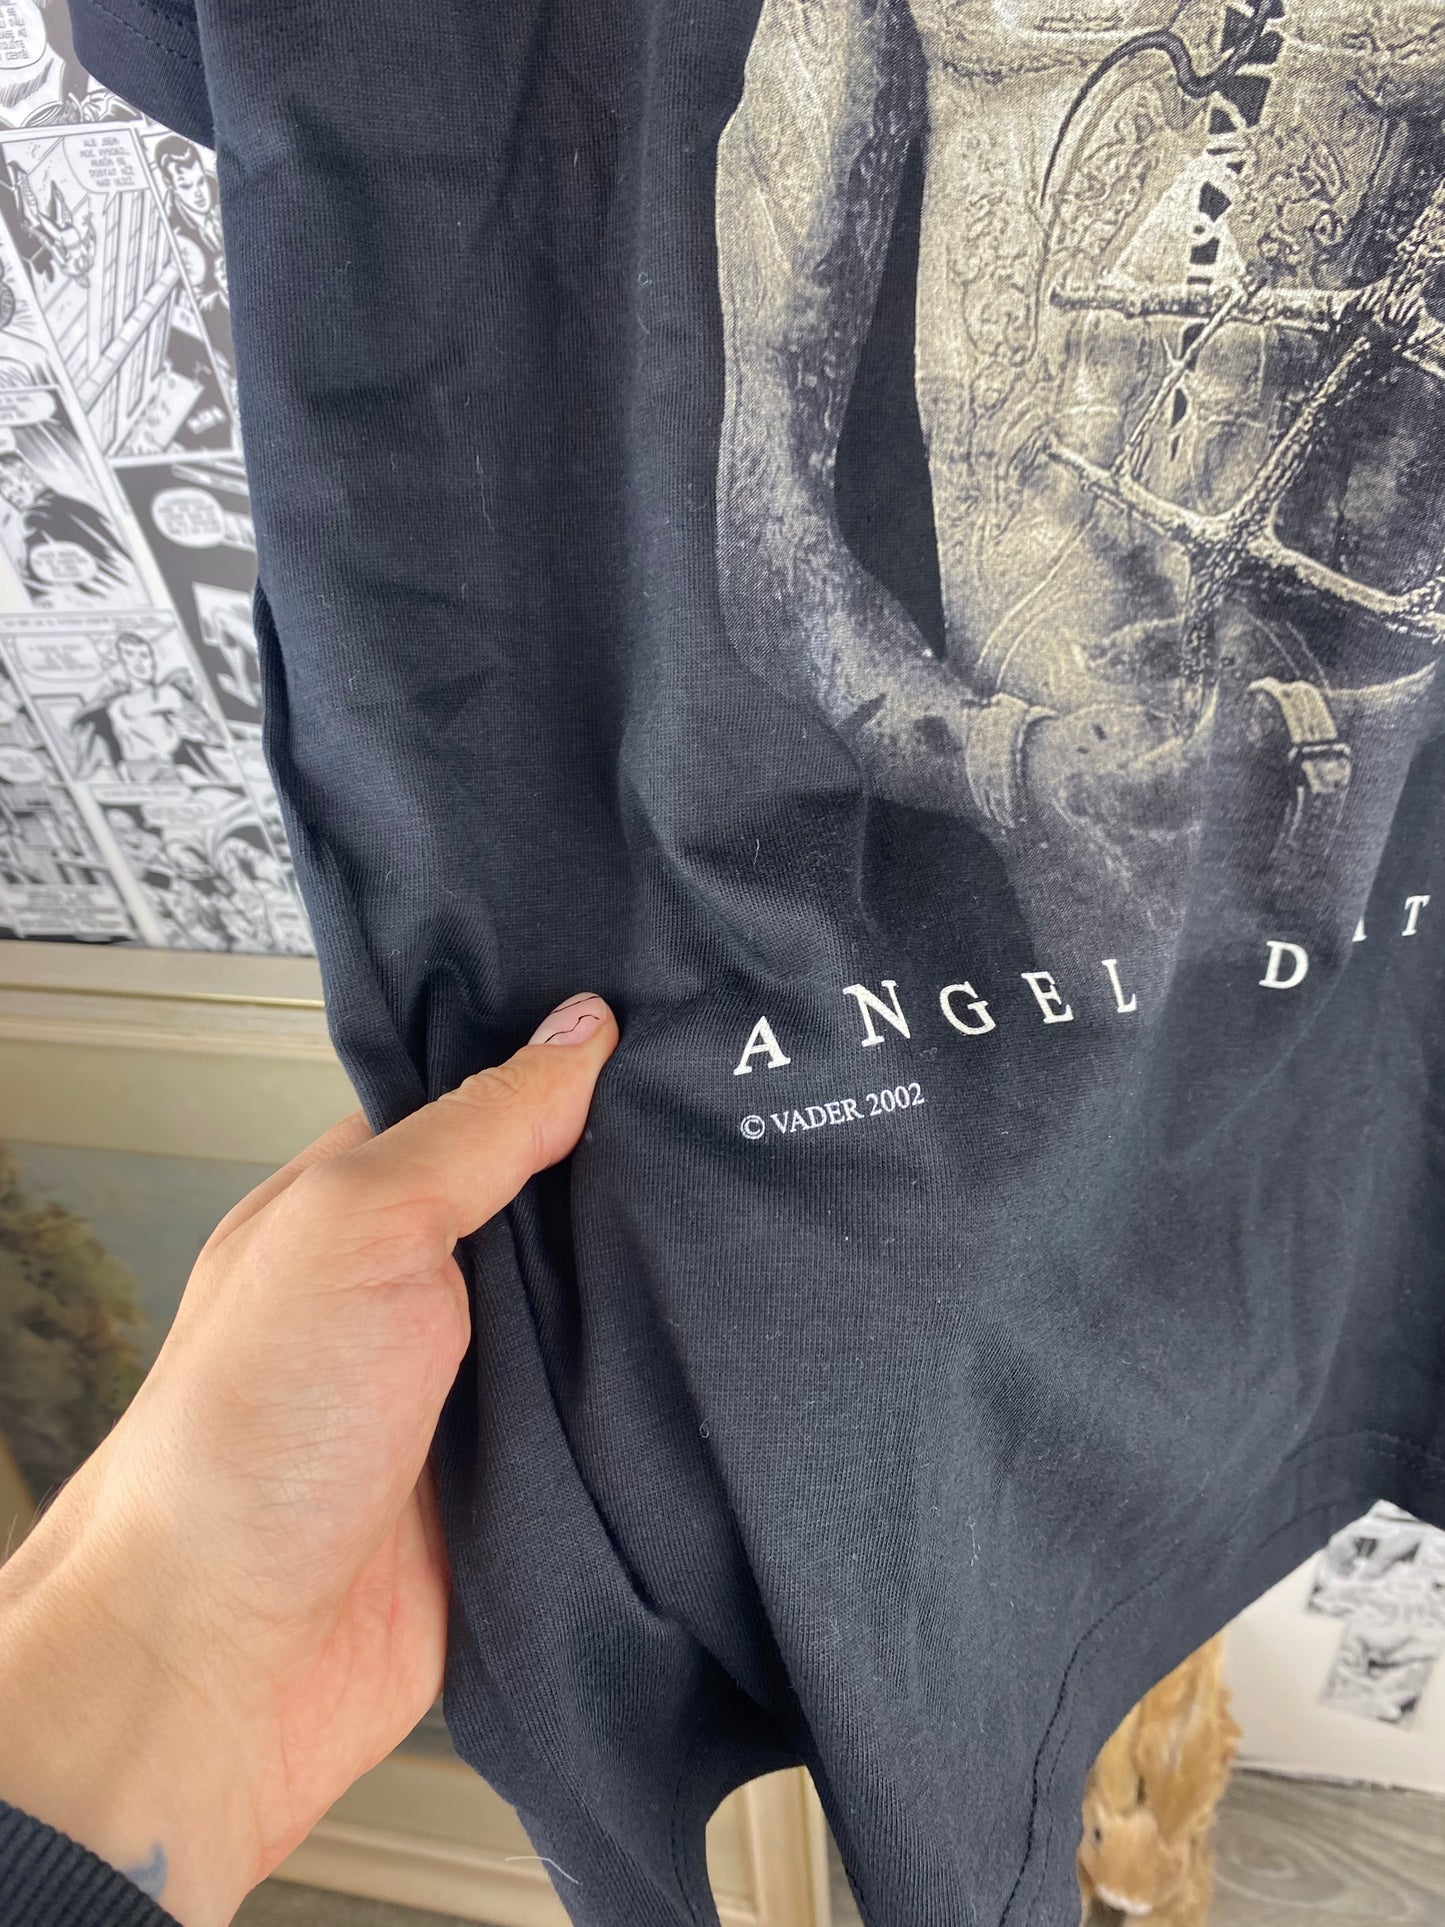 Vintage Vader “Angel of Death” 2002 t-shirt - size L